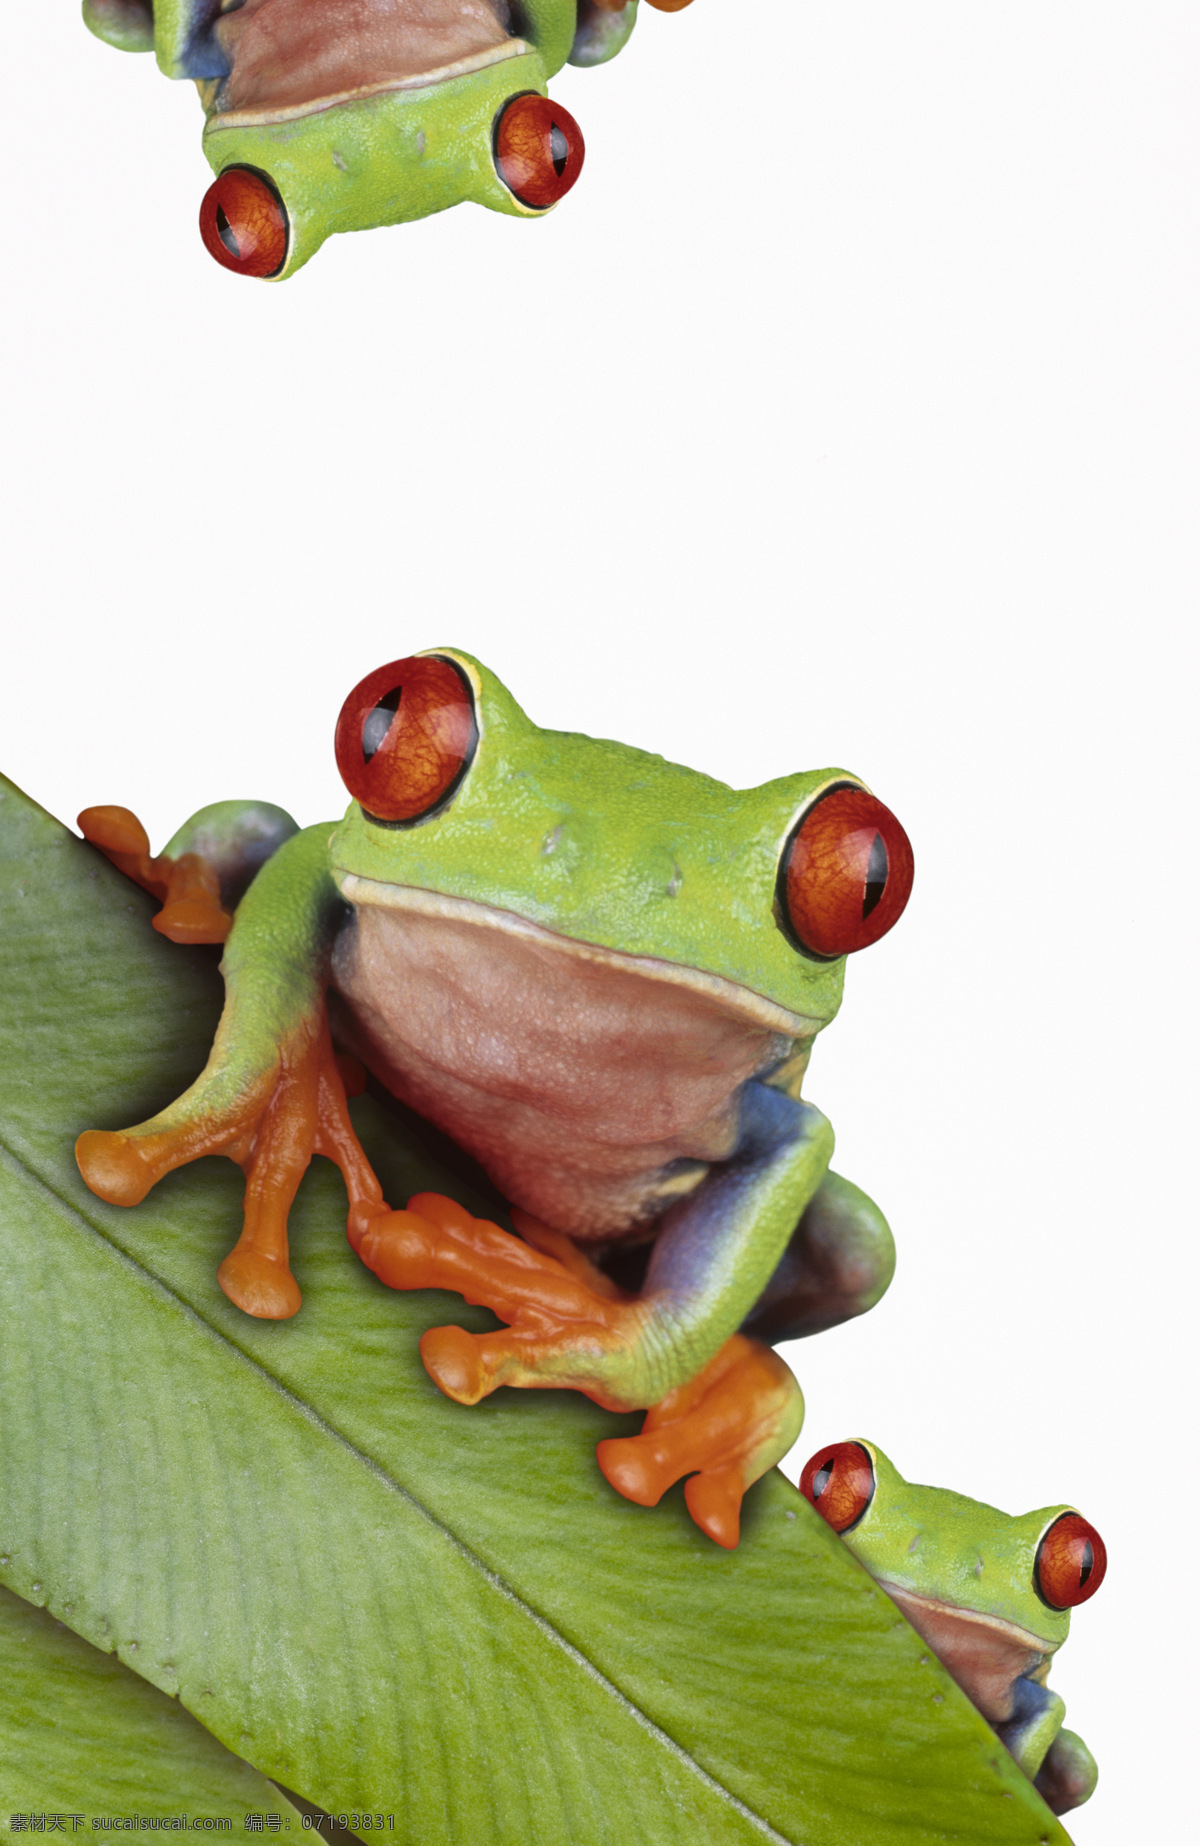 红眼睛青蛙 红眼睛 红眼 青蛙 生物世界 野生动物 摄影图库